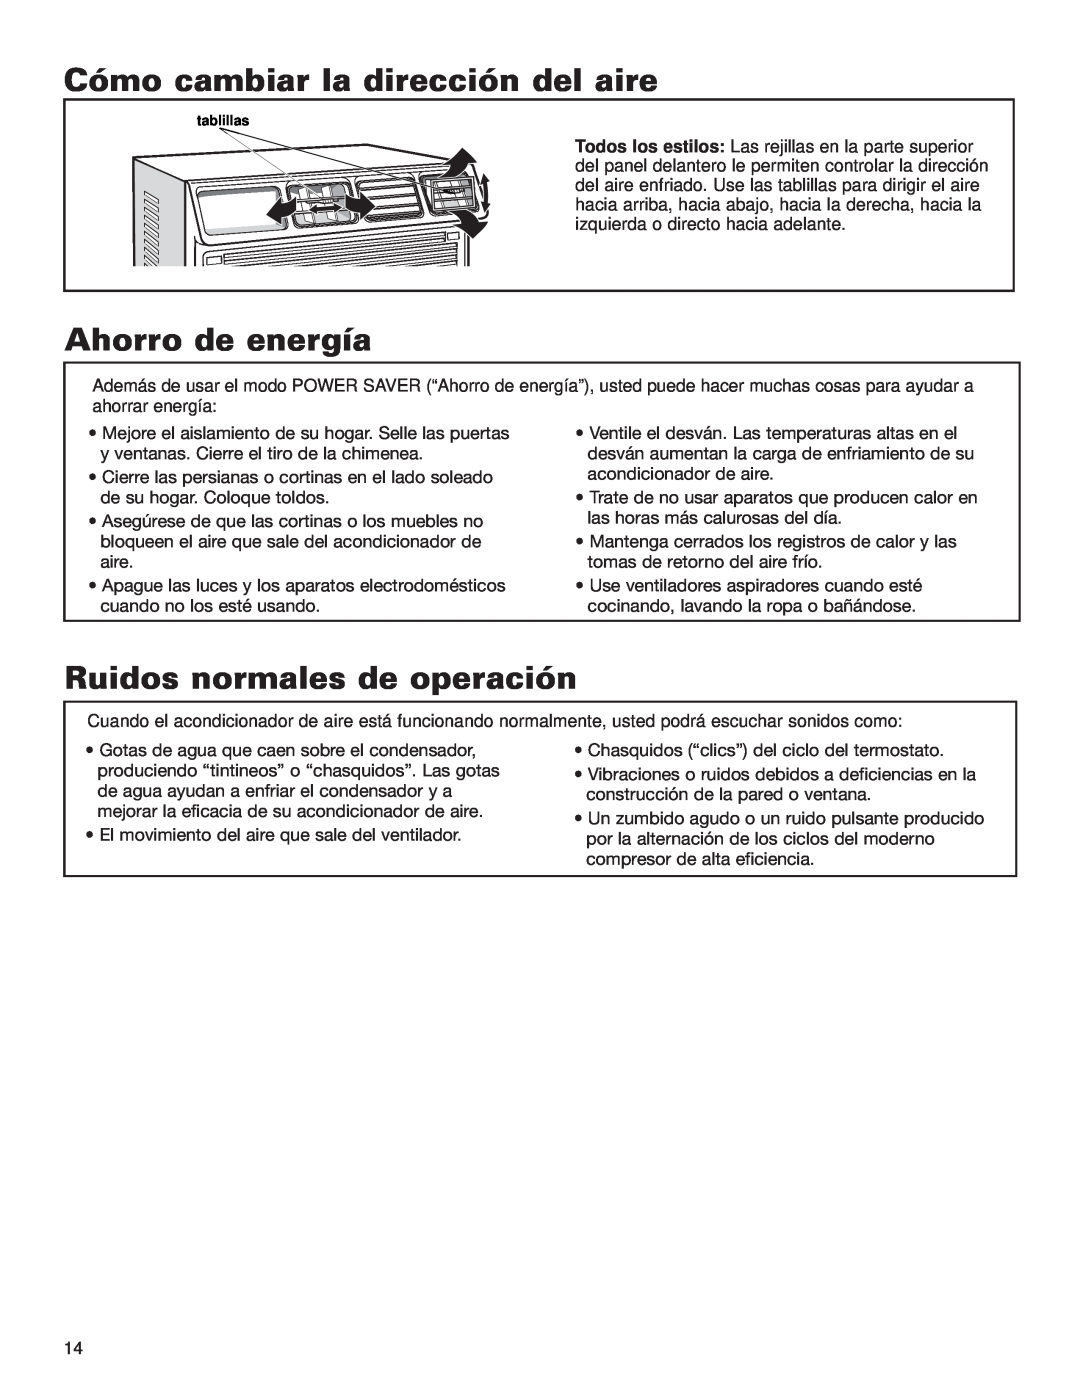 Whirlpool ACE184XL0 manual Cómo cambiar la dirección del aire, Ahorro de energía, Ruidos normales de operación 